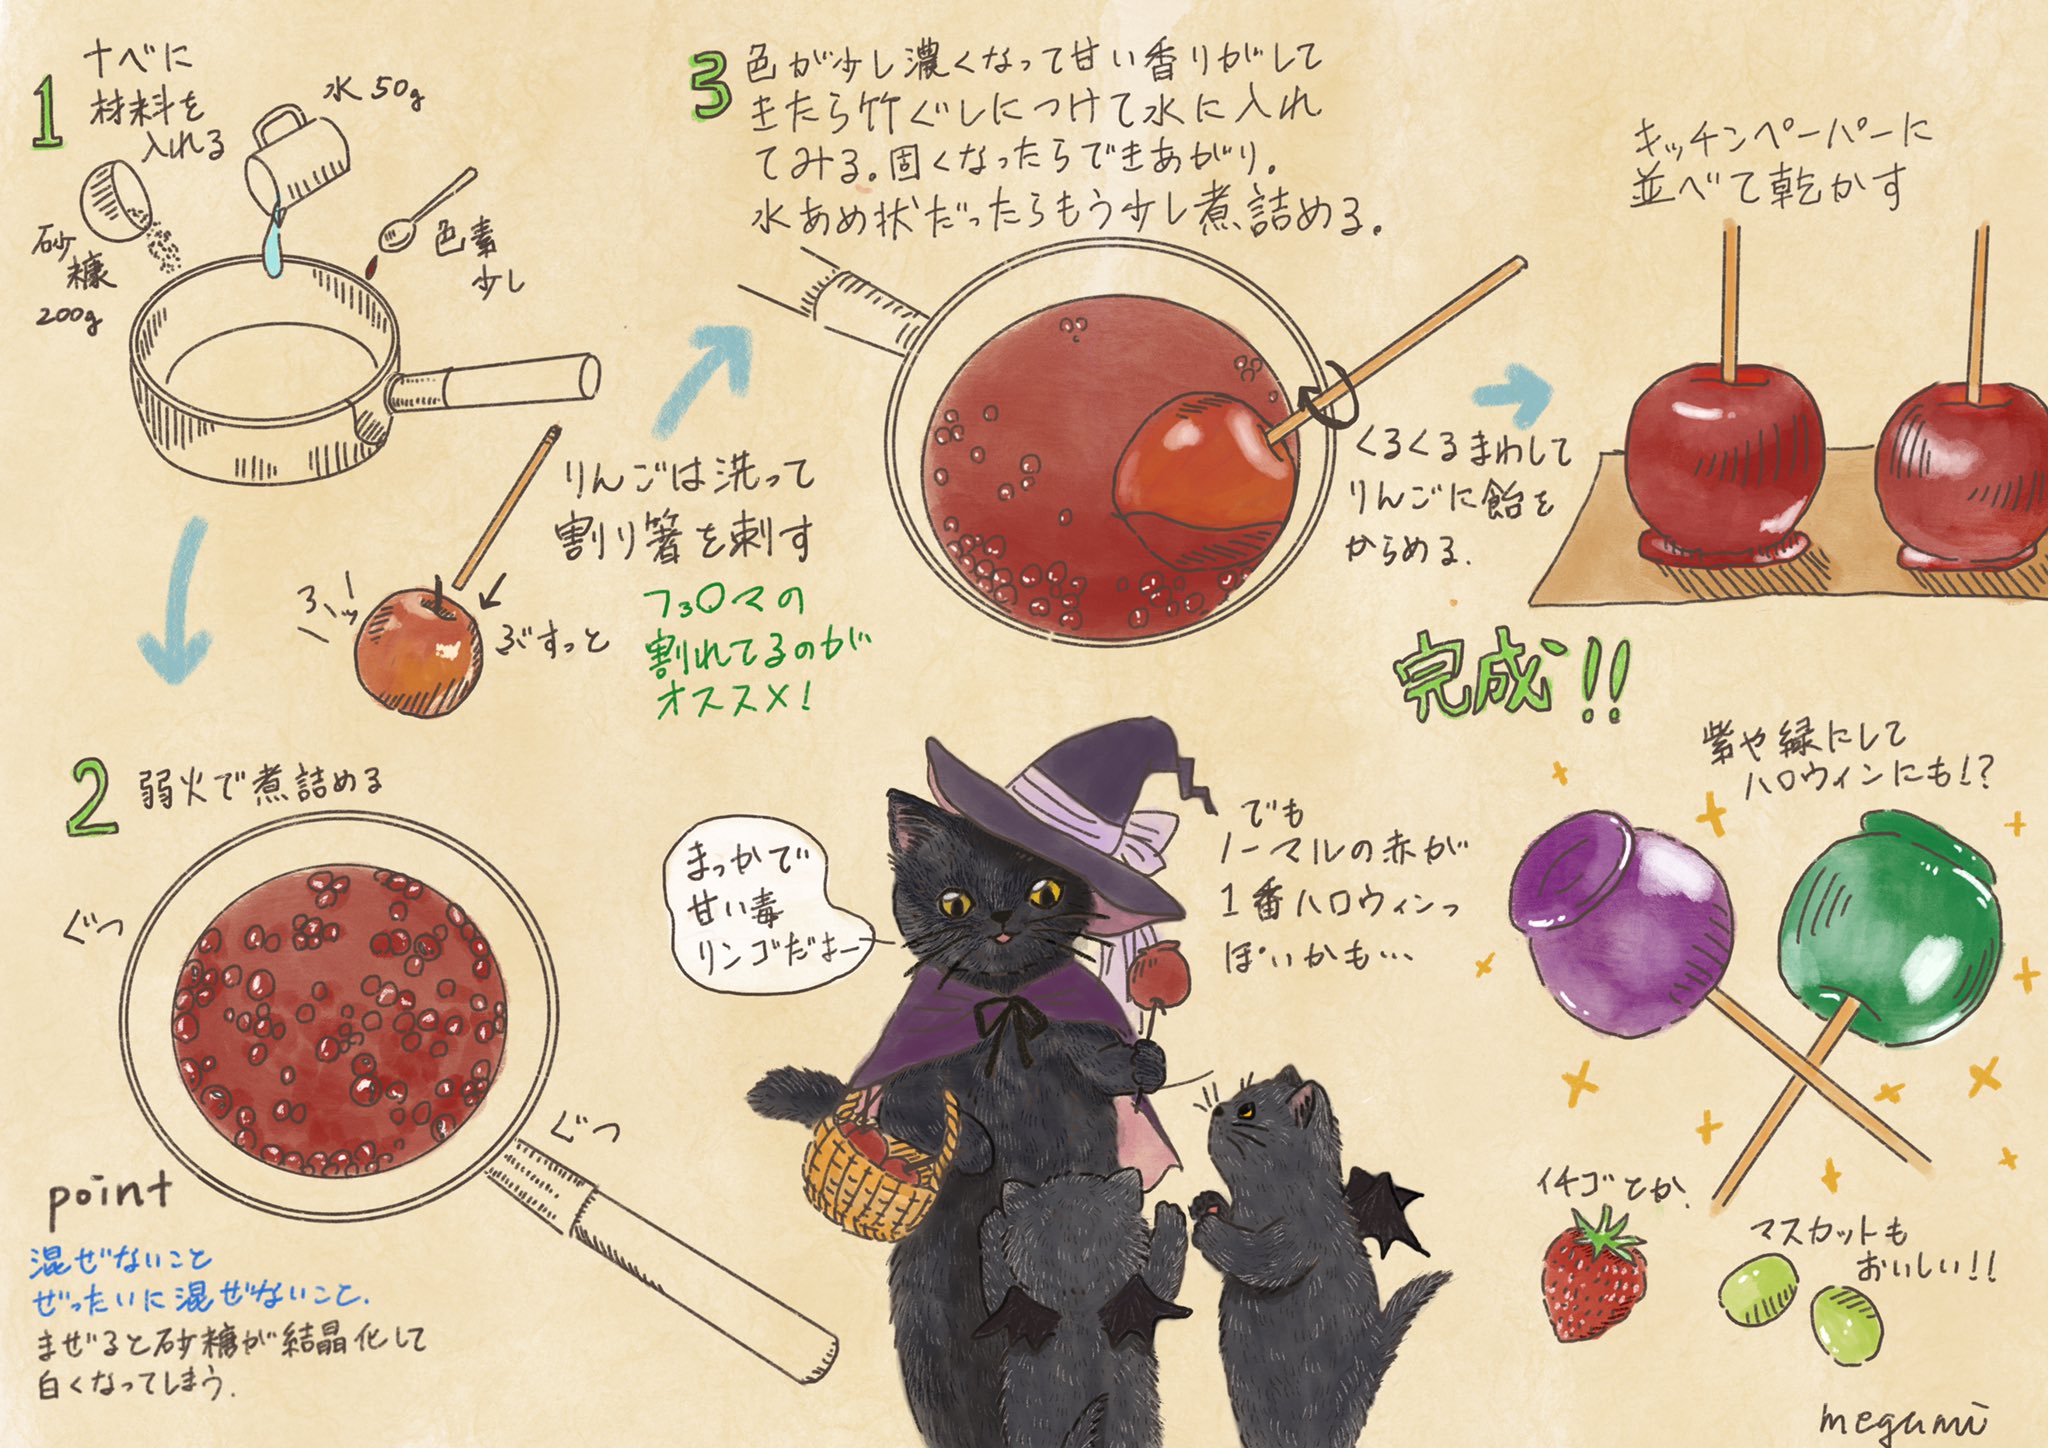 石川 恵 いしかわめぐみ りんご飴の作り方 材料 砂糖0g 水50g 色素少し 林檎 シナモンなどまぶすもの あれば ポイントは飴状になるまでしっかり煮詰めることと混ぜないことです 猫イラスト 黒猫 絵本 挿絵 可愛いイラスト